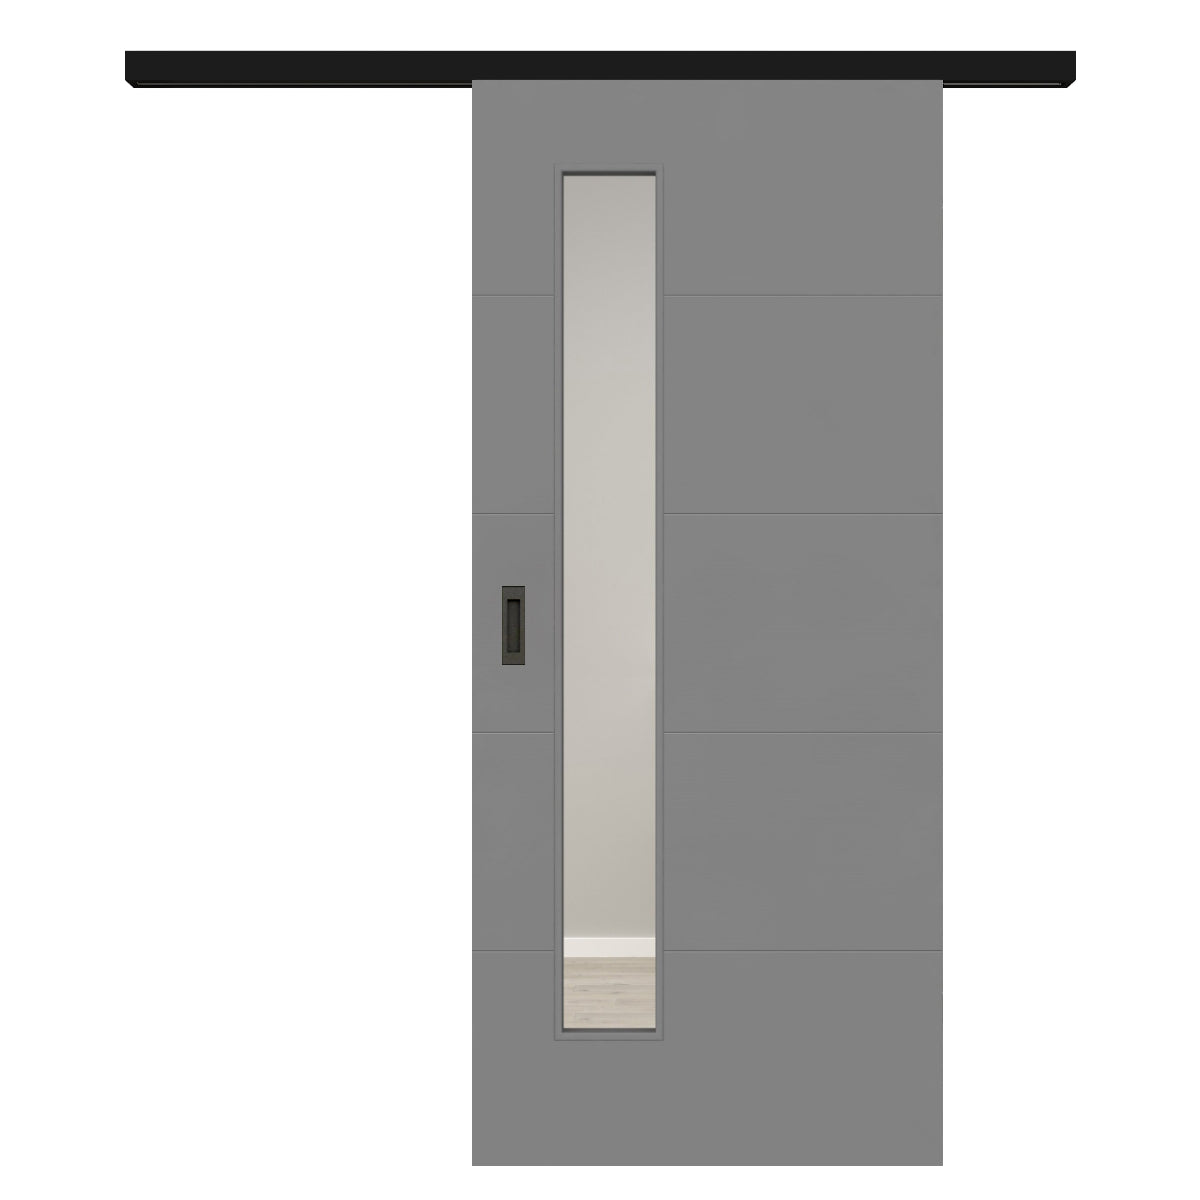 Schiebetür für Set mit schwarzem Laufkasten mit Lichtausschnitt grau 4 Rillen quer - Modell Designtür Q47LAS